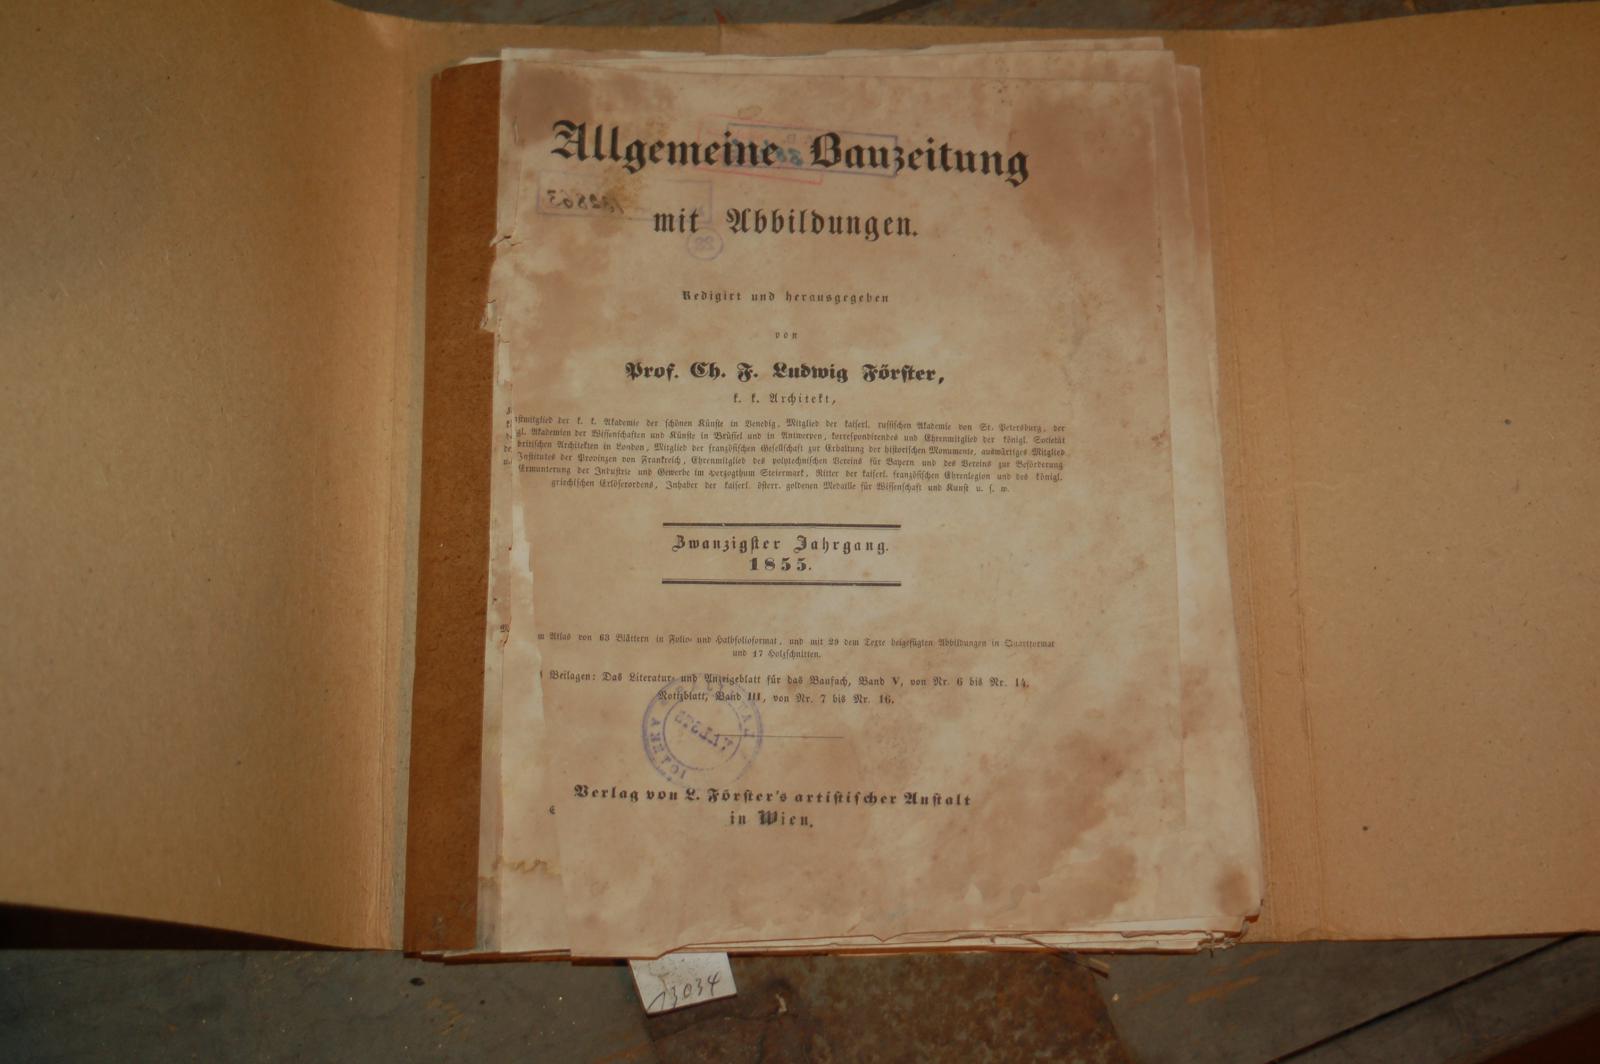 Förster Prof Ch. F. Ludwig  Allgemeine Bauzeitung mit Abbildungen  20. Jahrgang 1855 